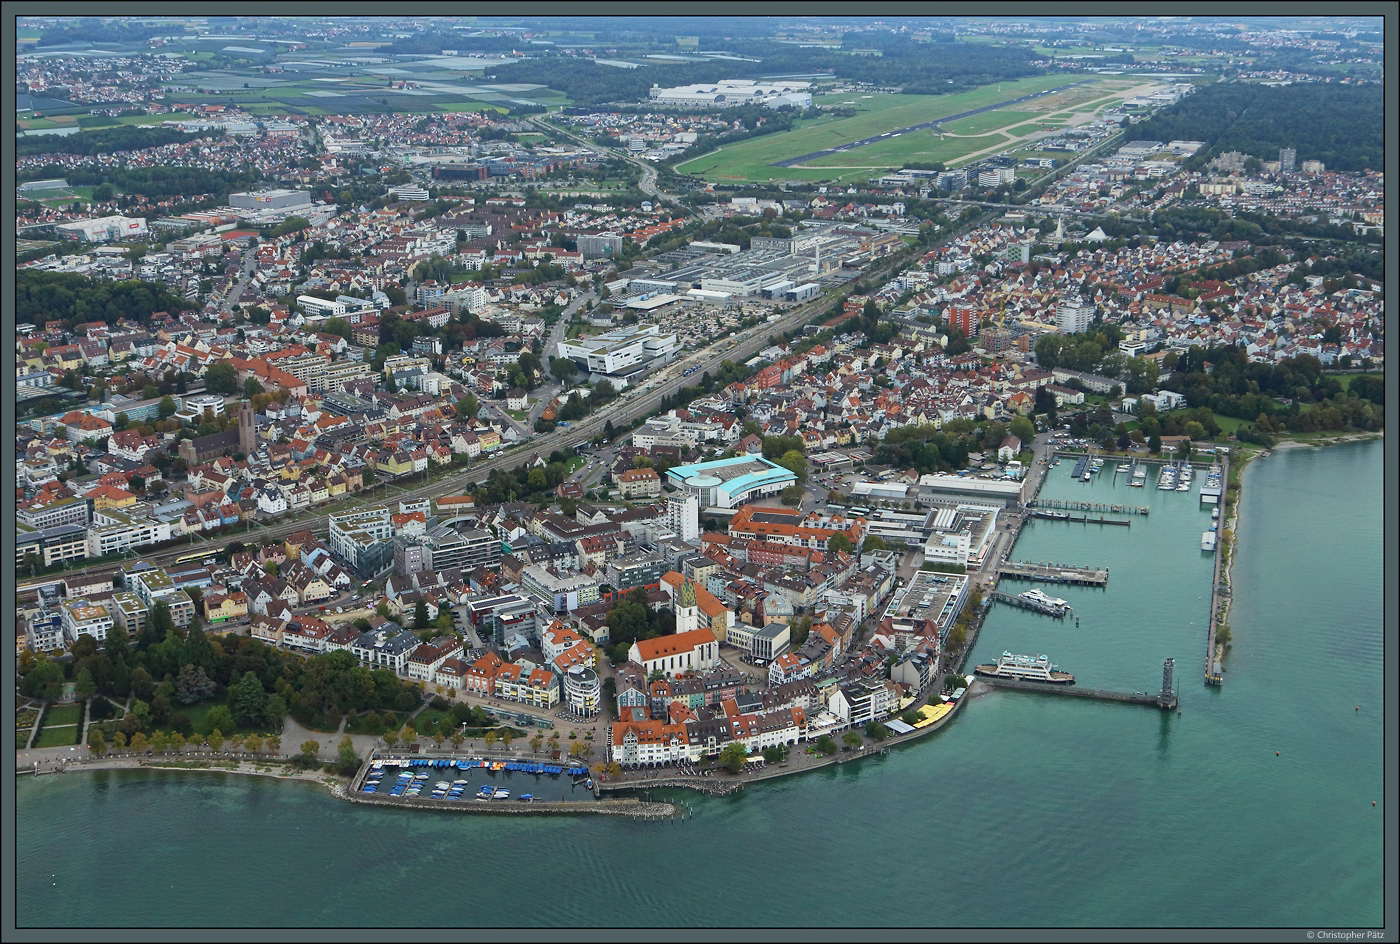 Am Seeufer liegt die Altstadt von Friedrichshafen, mit der Kirche St. Nikolaus im Zentrum. Links der Bahngleise ist die Kirche St. Petrus-Canisius zu erkennen. Im Hintergrund ist der Flughafen zu sehen, zwischen Stadt und Flughafen wiederum die Hallen des ZF-Werkes Friedrichshafen. (05.10.2023)